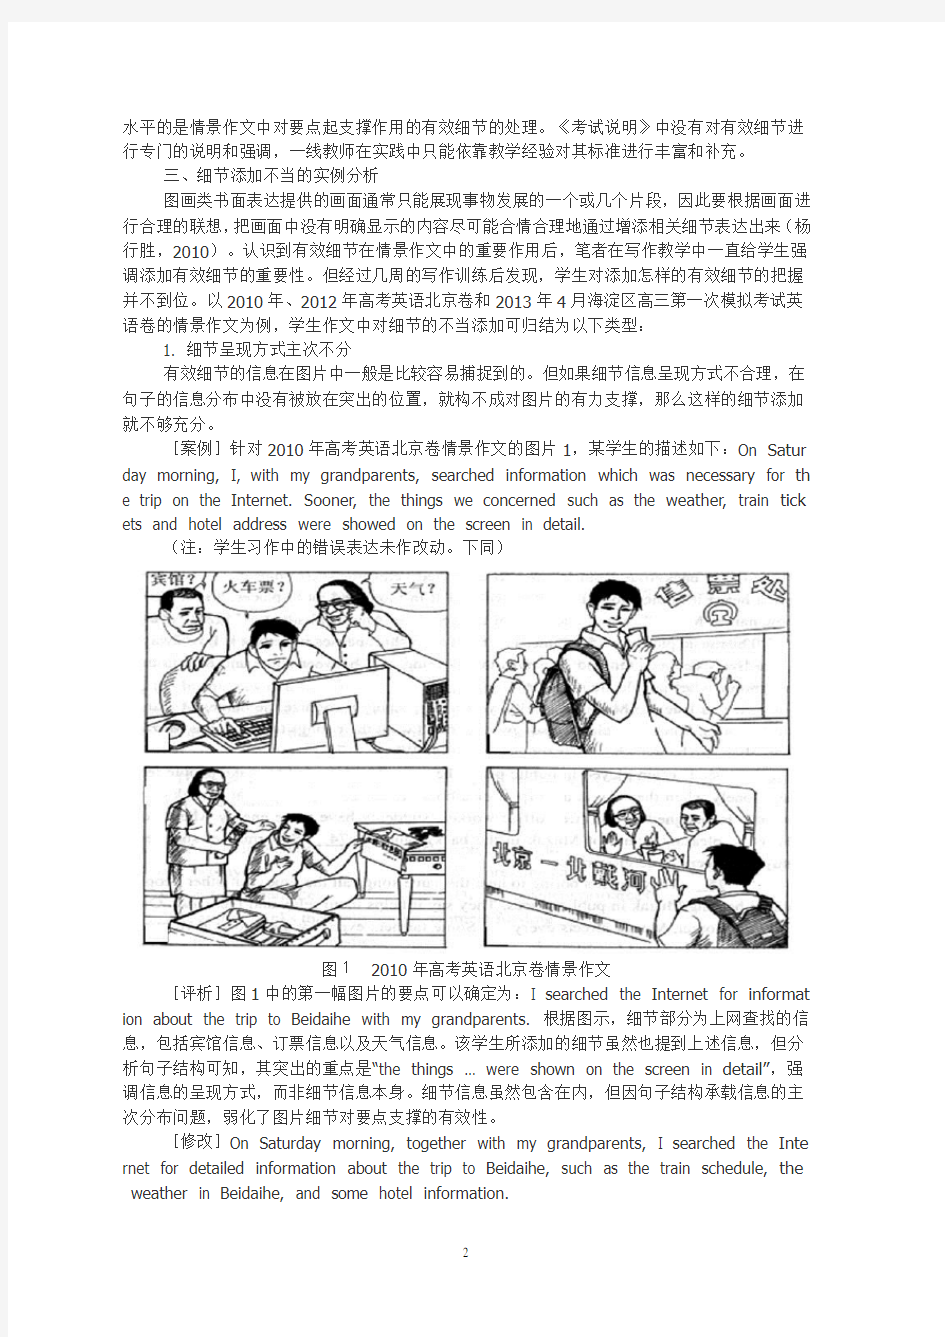 高考英语北京卷情景作文中有效细节添加的实践研究